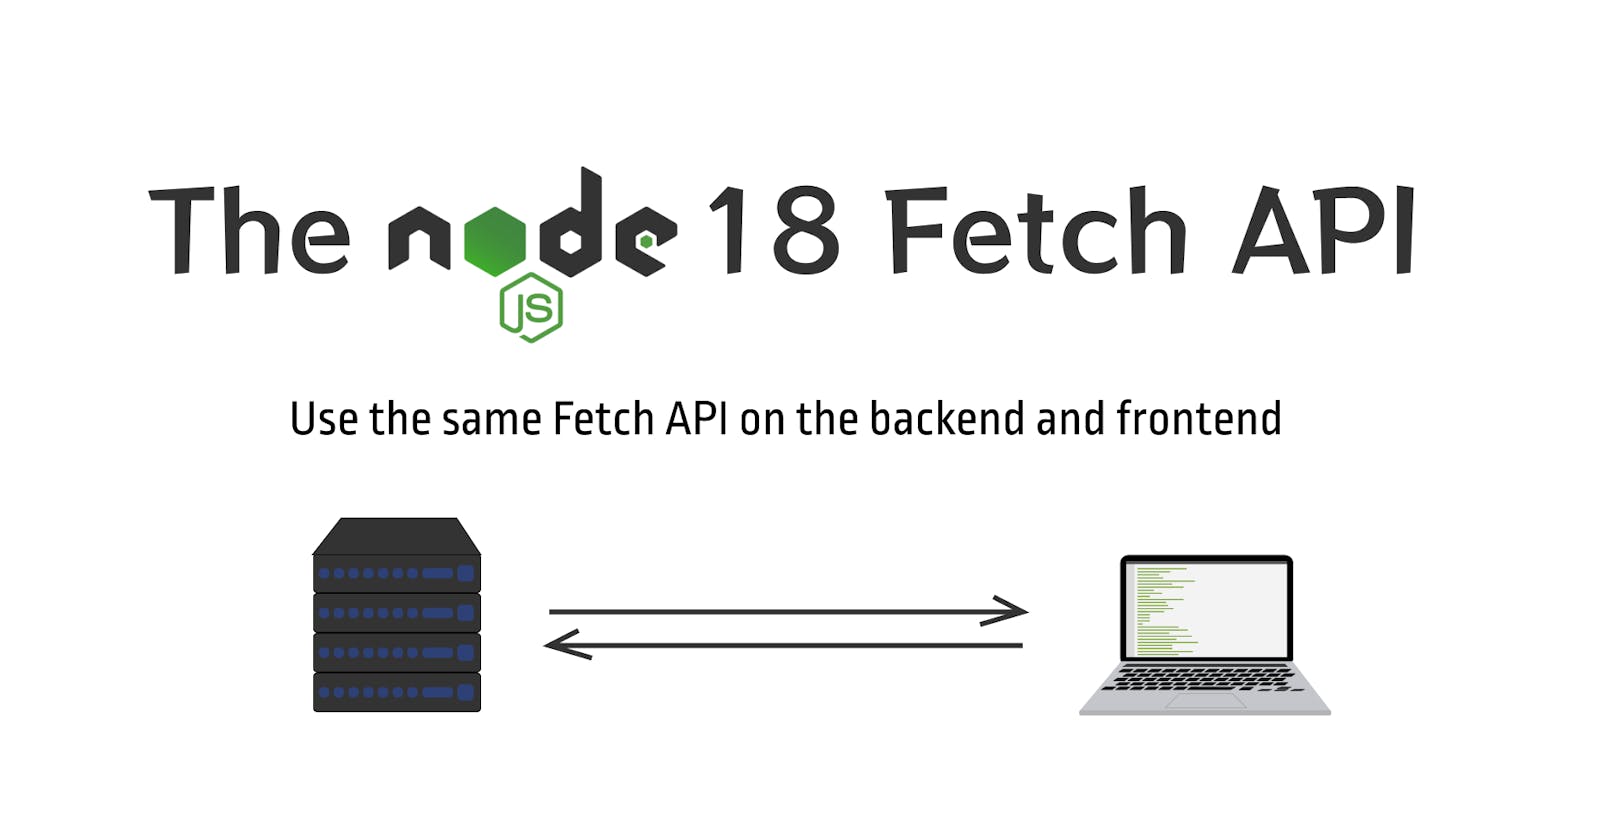 The NodeJS 18 Fetch API